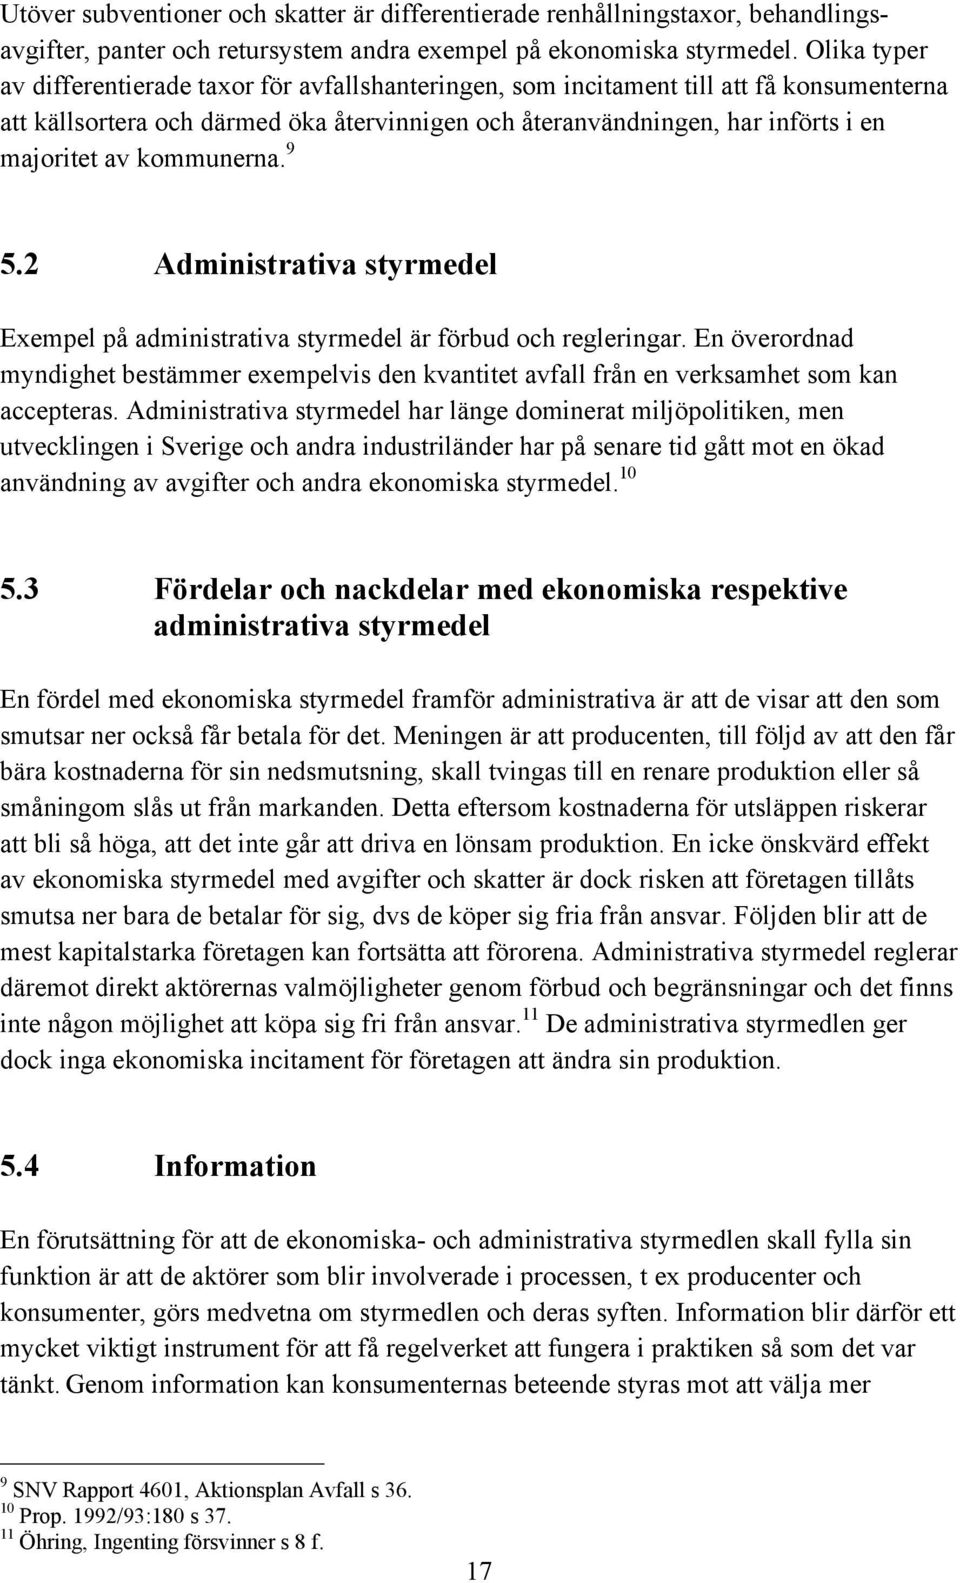 kommunerna. 9 5.2 Administrativa styrmedel Exempel pœ administrativa styrmedel Šr fšrbud och regleringar.